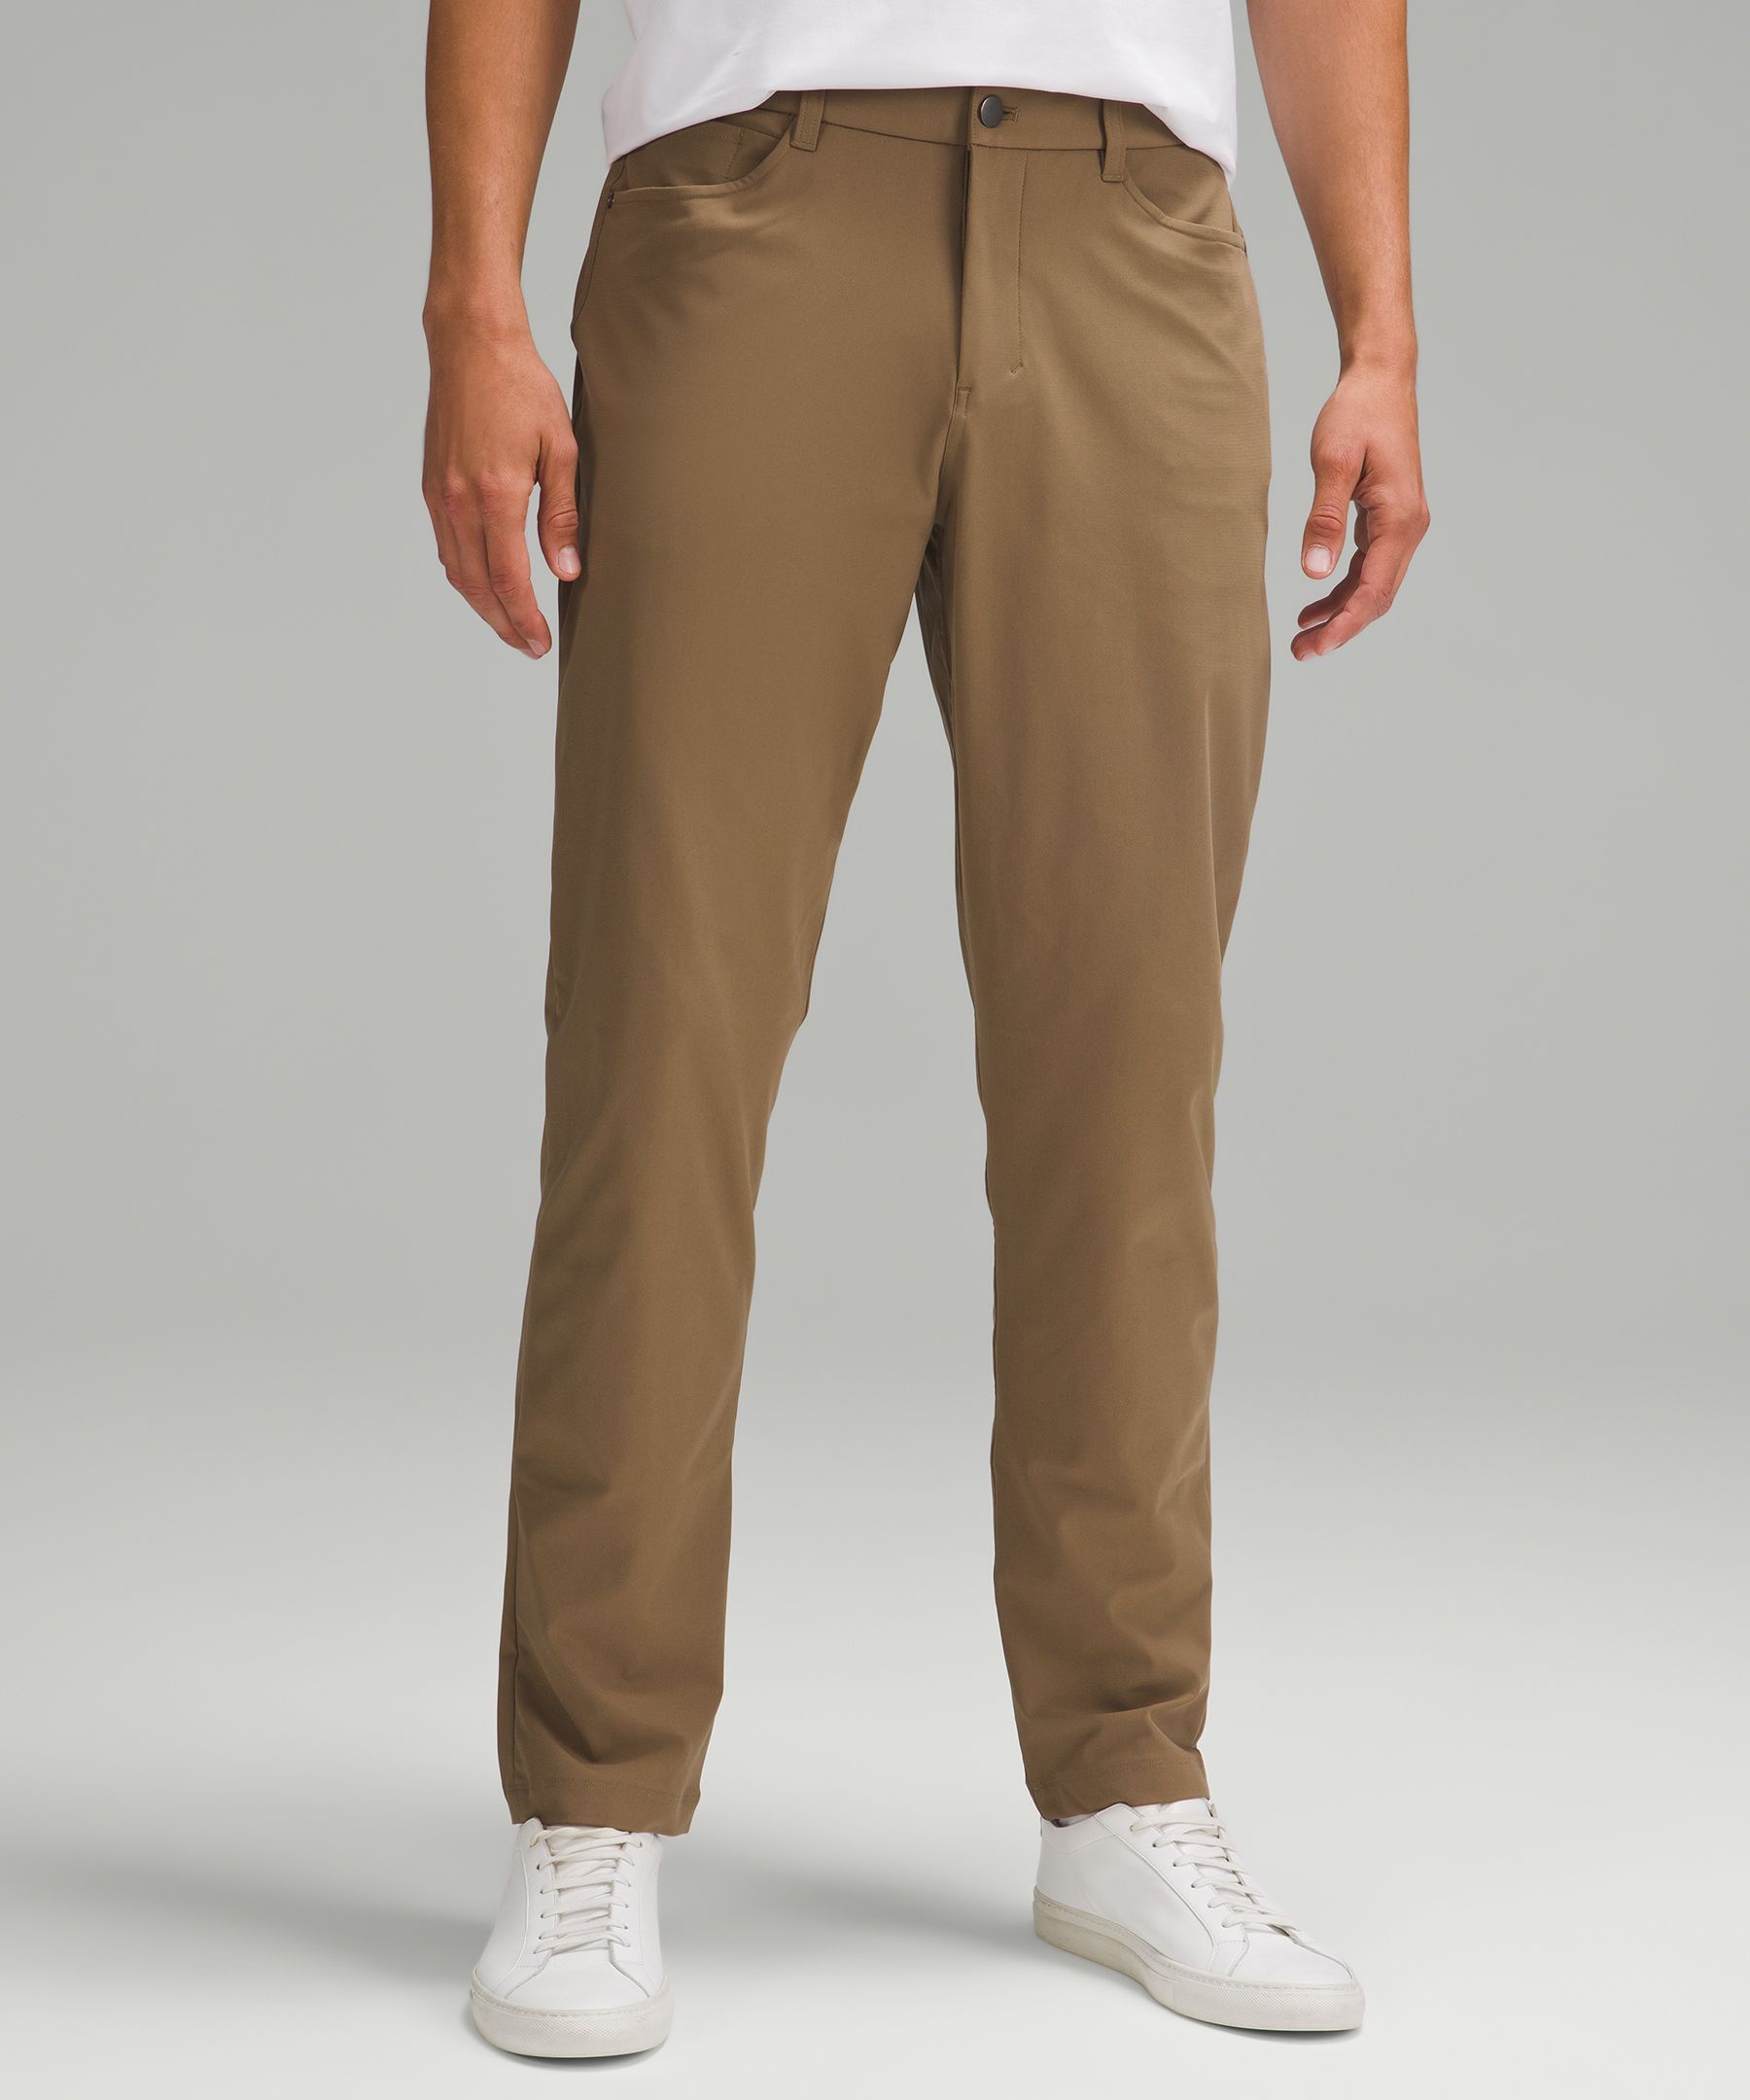 lululemon athletica, Pants, Lululemon Abc Pant Classic Color Beige Mens  Size 34 Style M5426s